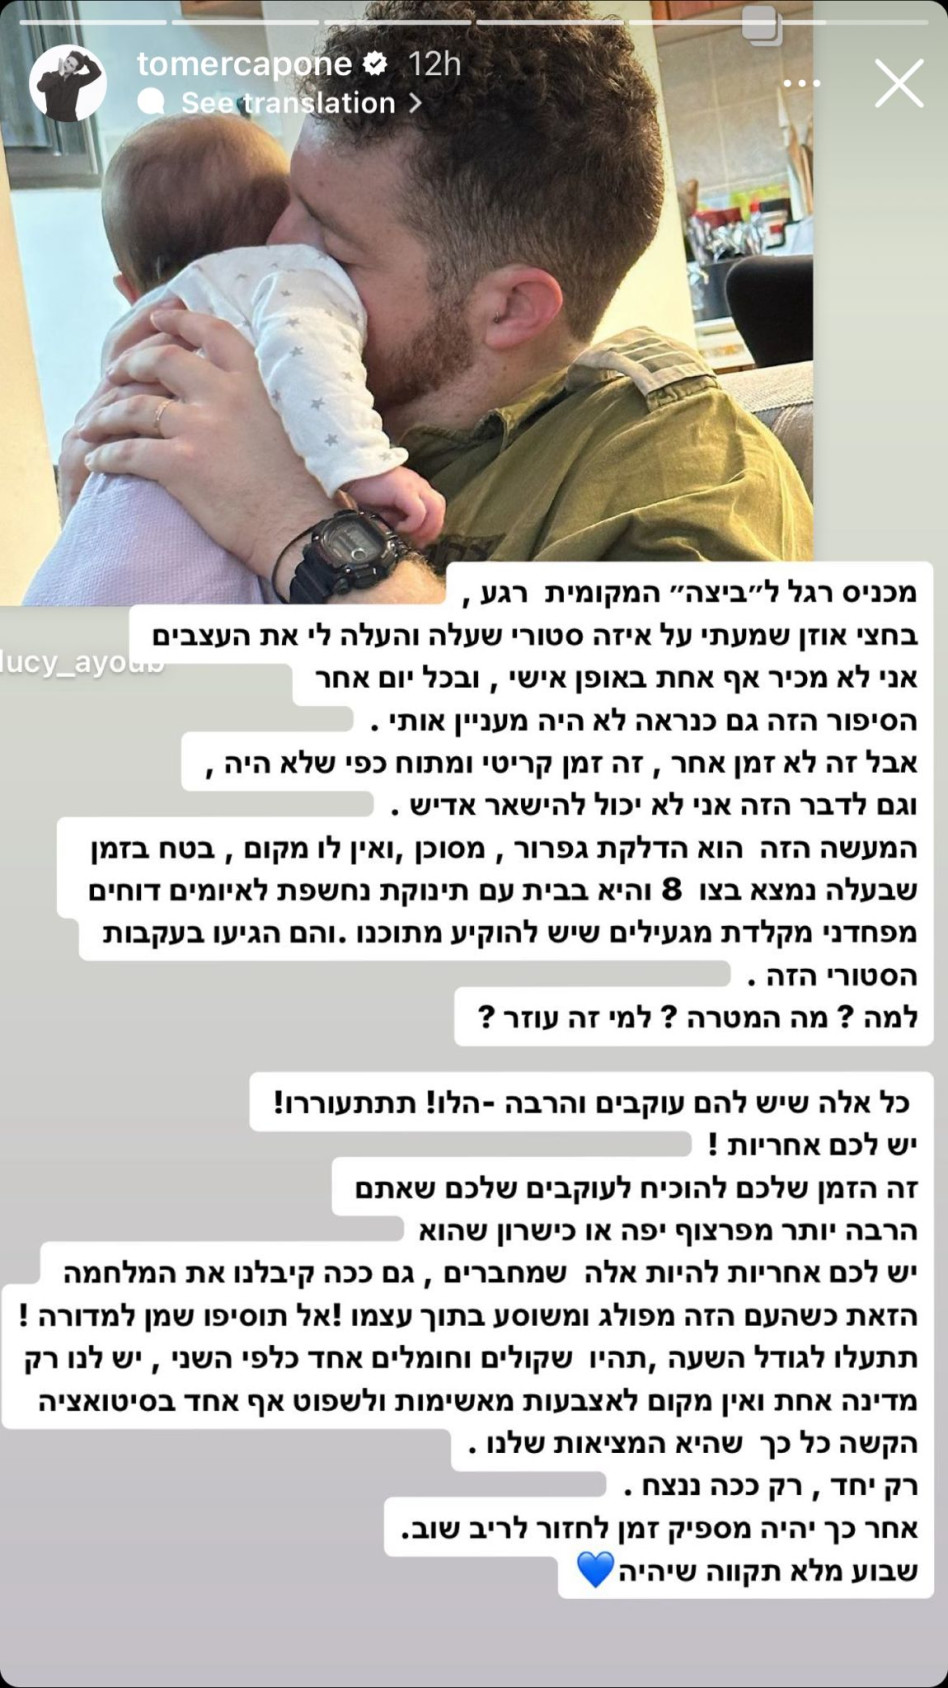 תומר קאפון יוצא להגנת לוסי איוב (צילום: צילום מסך מתוך אינסטגרם)